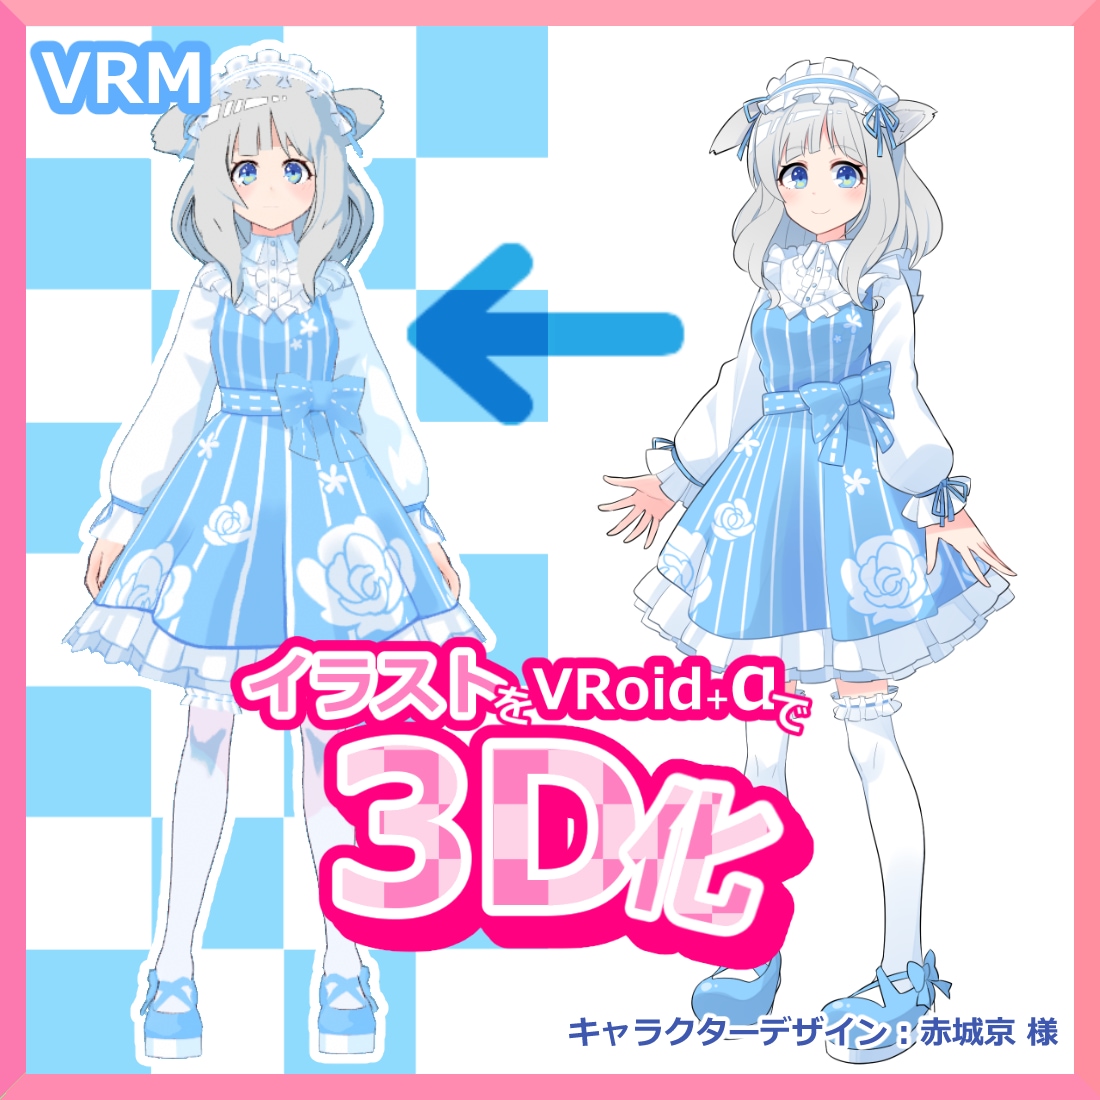 VRoid+αで3Dキャラクターをお作りします オリジナルキャラクターを低価格で3D(VRM)化いたします イメージ1